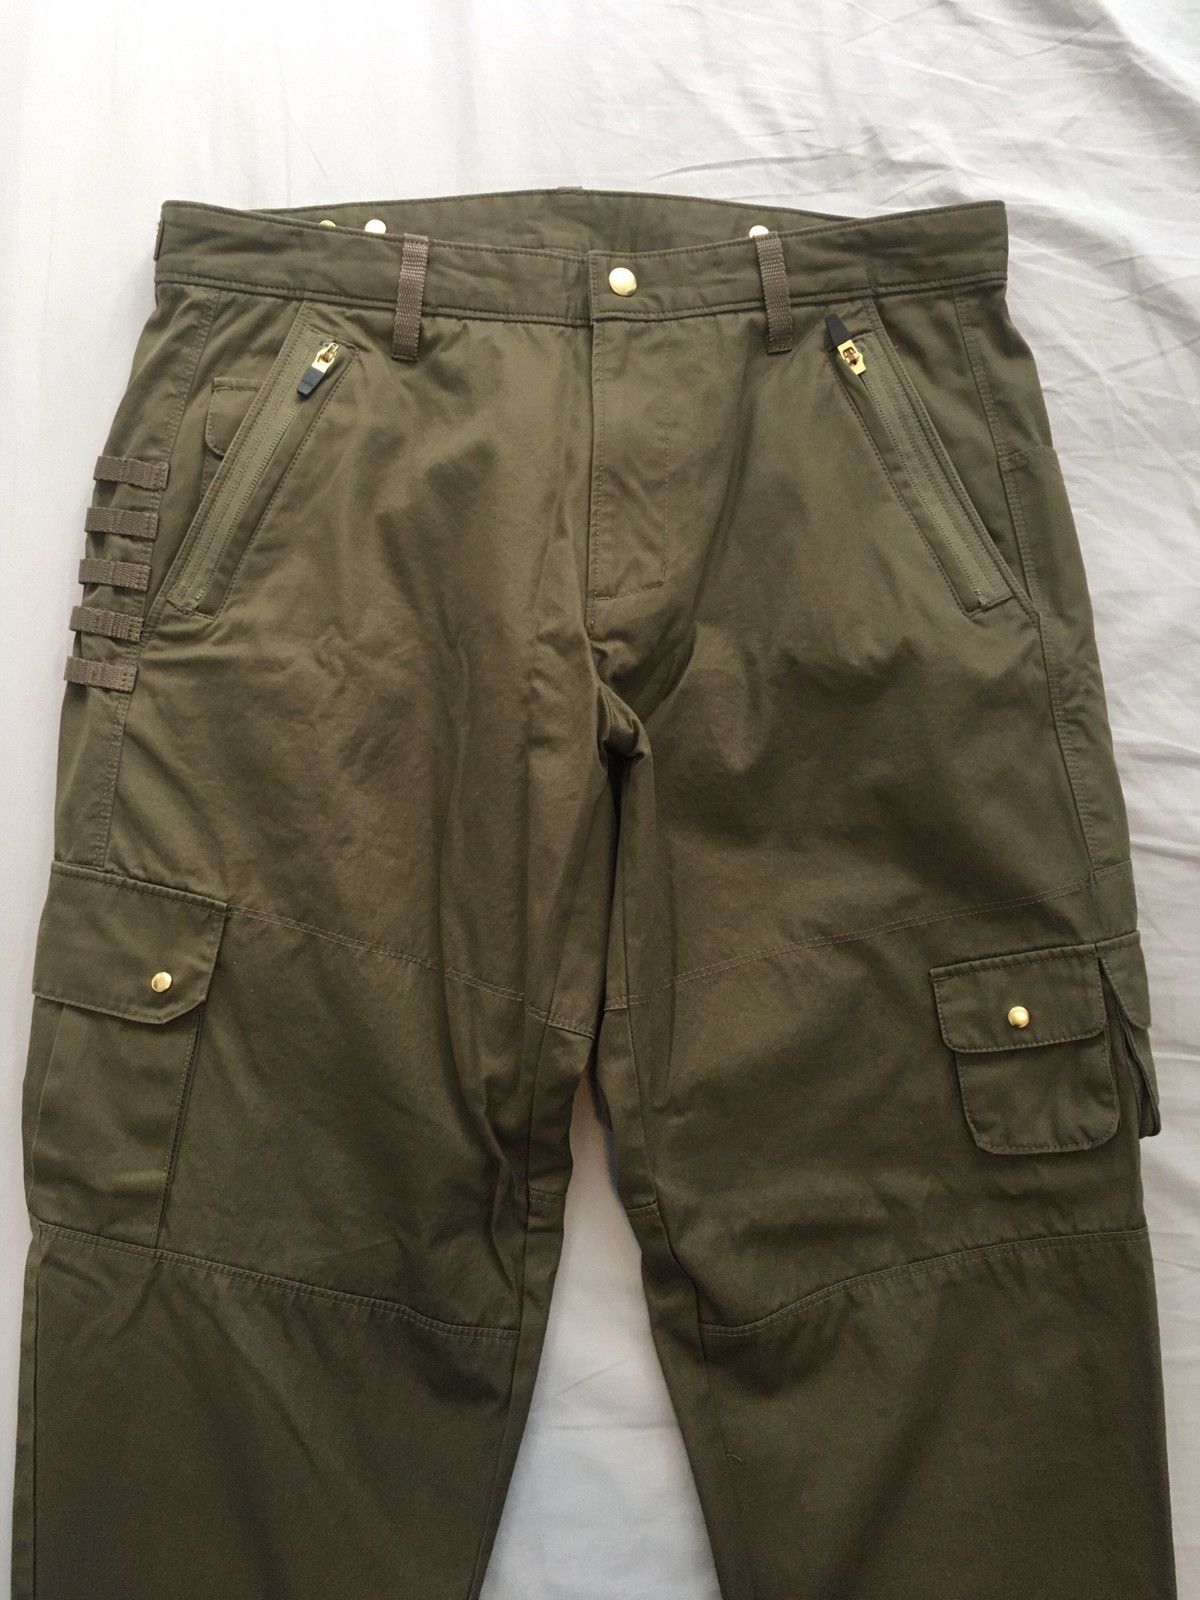 Kith Kith Tactical Cargo Pants 34x30 | Grailed